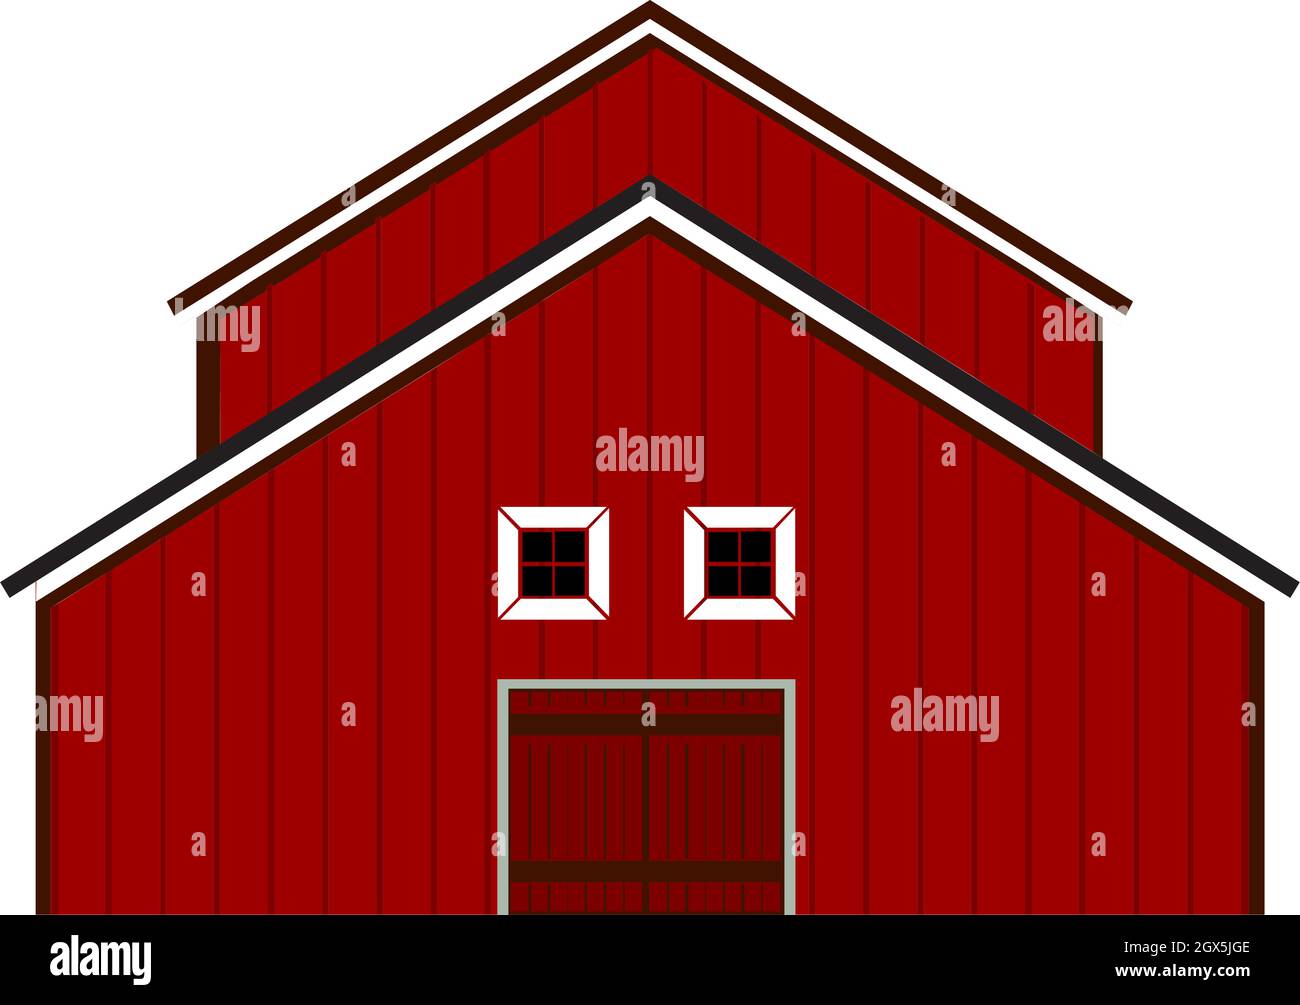 Rote Scheune Haus Illustration Vektor auf weißem Hintergrund Stock Vektor